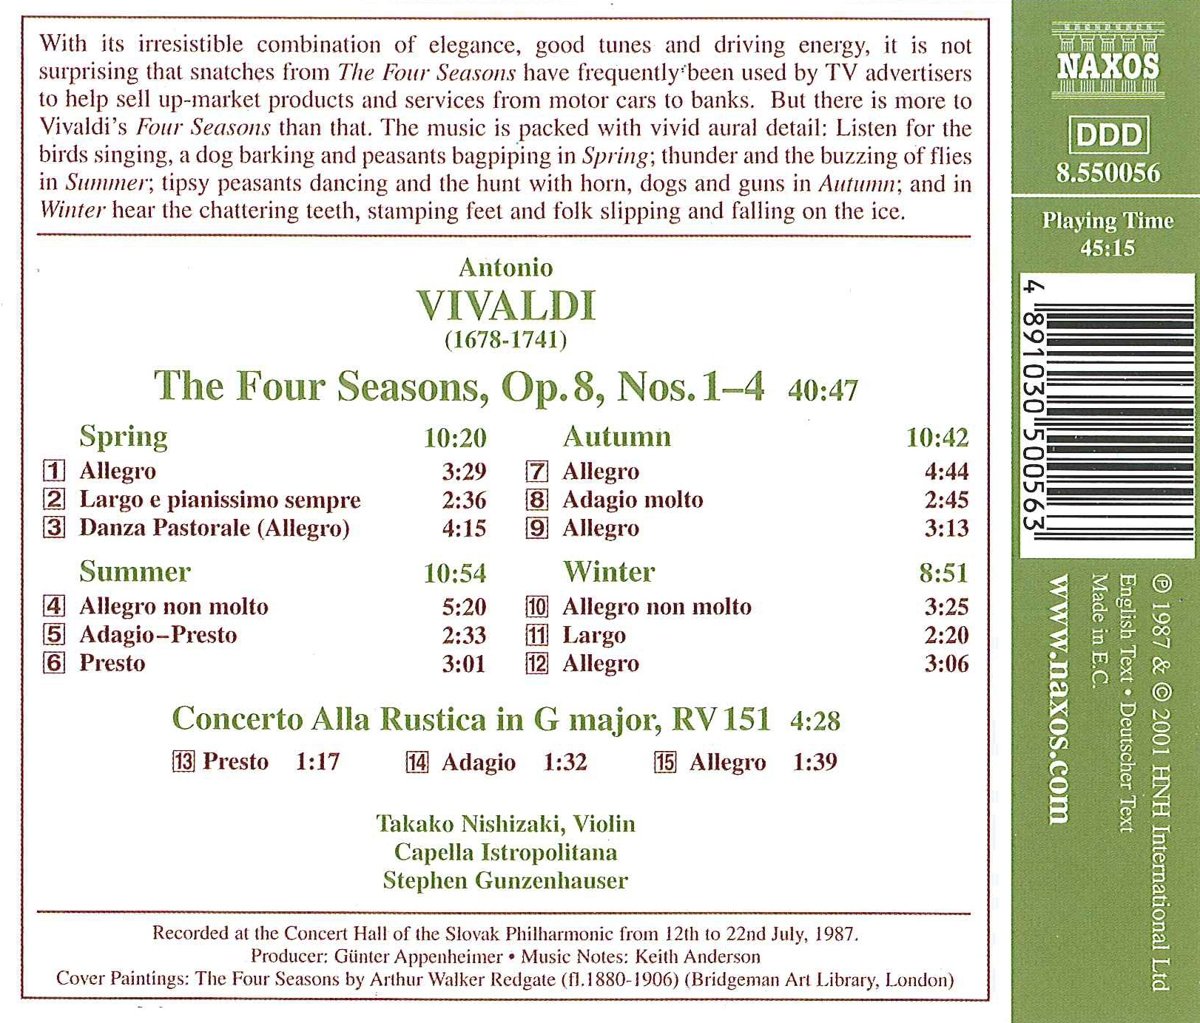 Vivaldi: The Four Season | Antonio Vivaldi image1